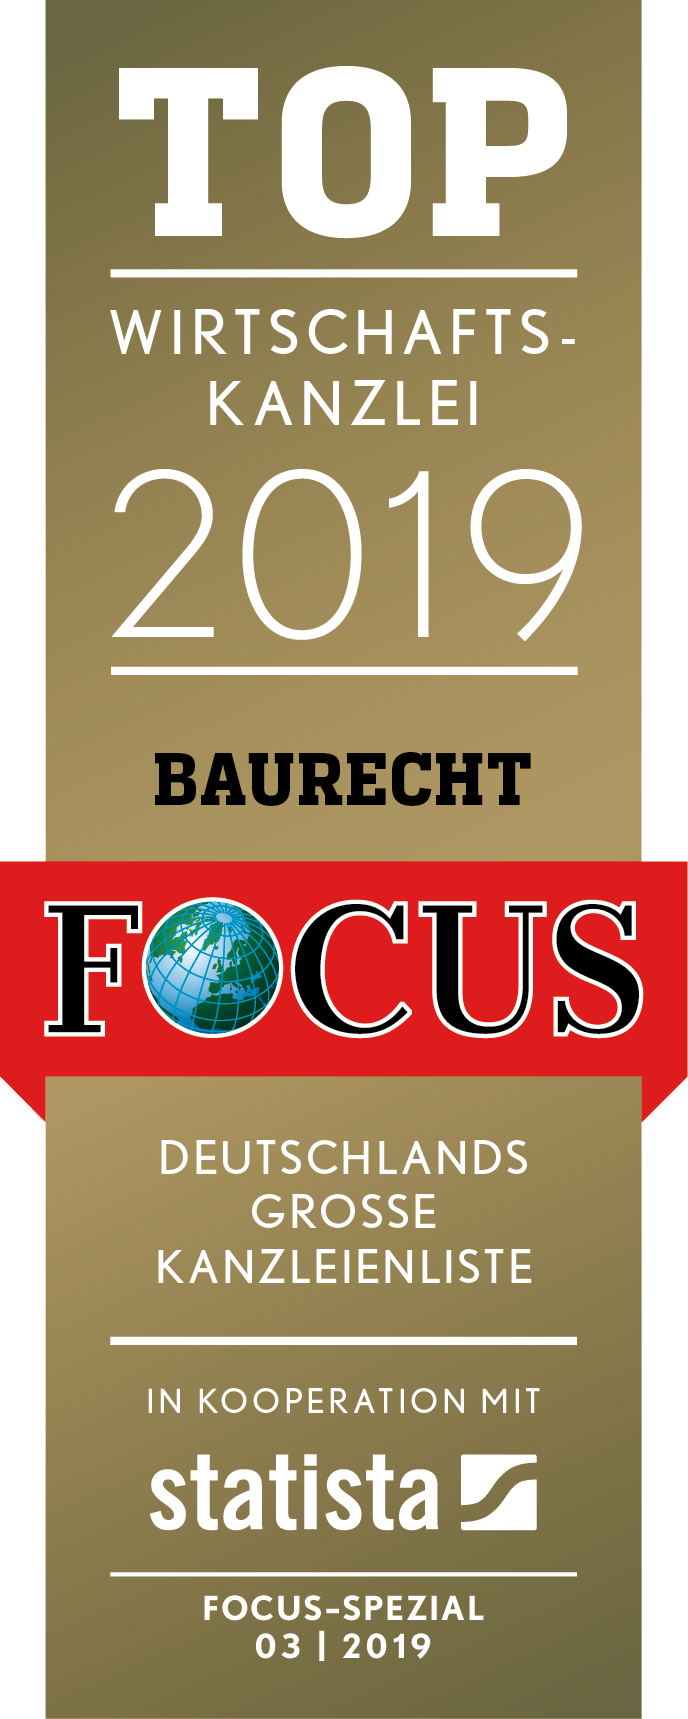 FCS TOP Wirtschaftskanzlei 2019 mit Quelle Baurecht